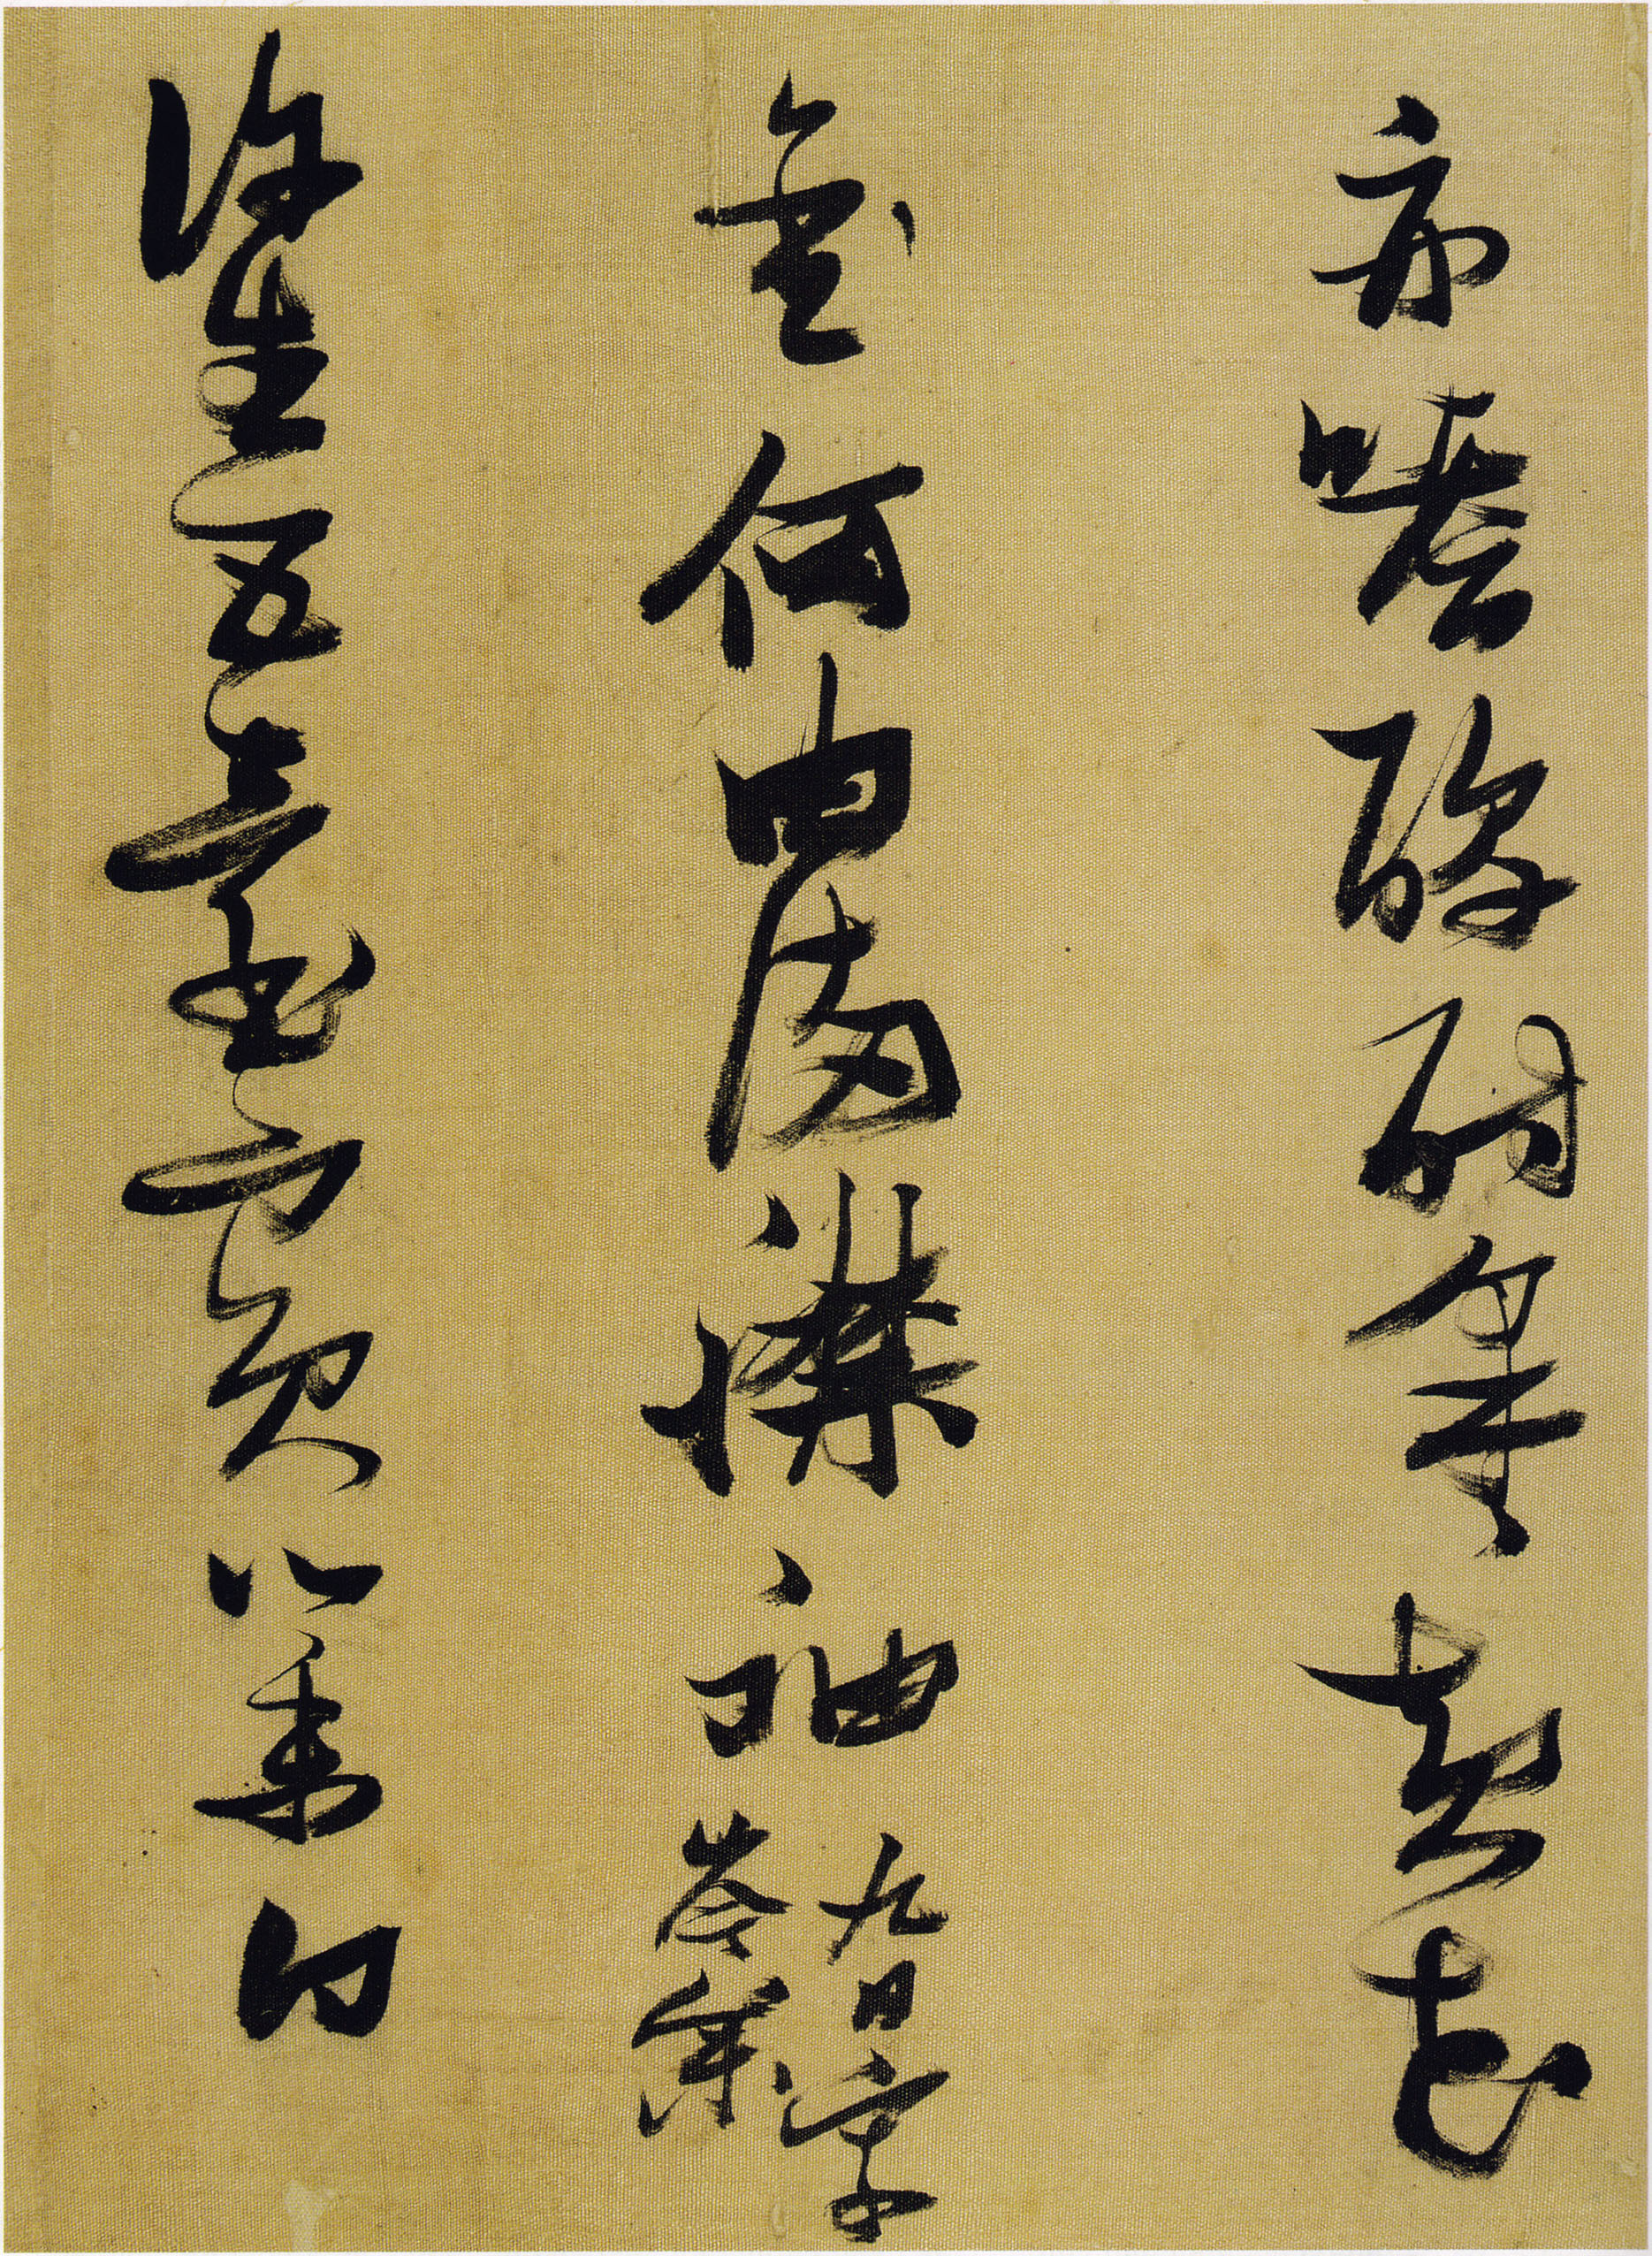 张瑞图《行草书杜甫诗册》,追求其内在的韵味,迥异前人